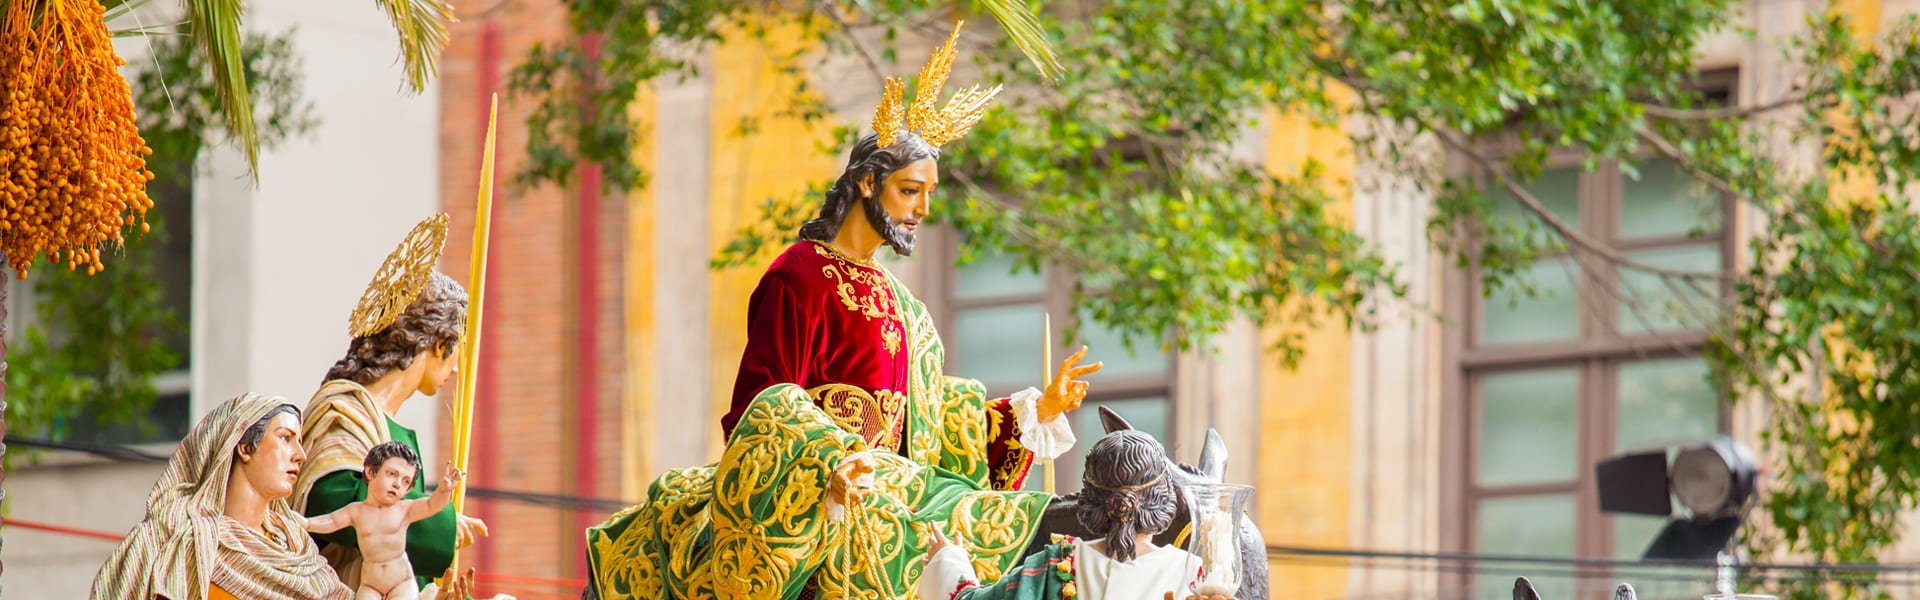 Processie tijdens de Semana Santa in Sevilla, Andalusië, Spanje